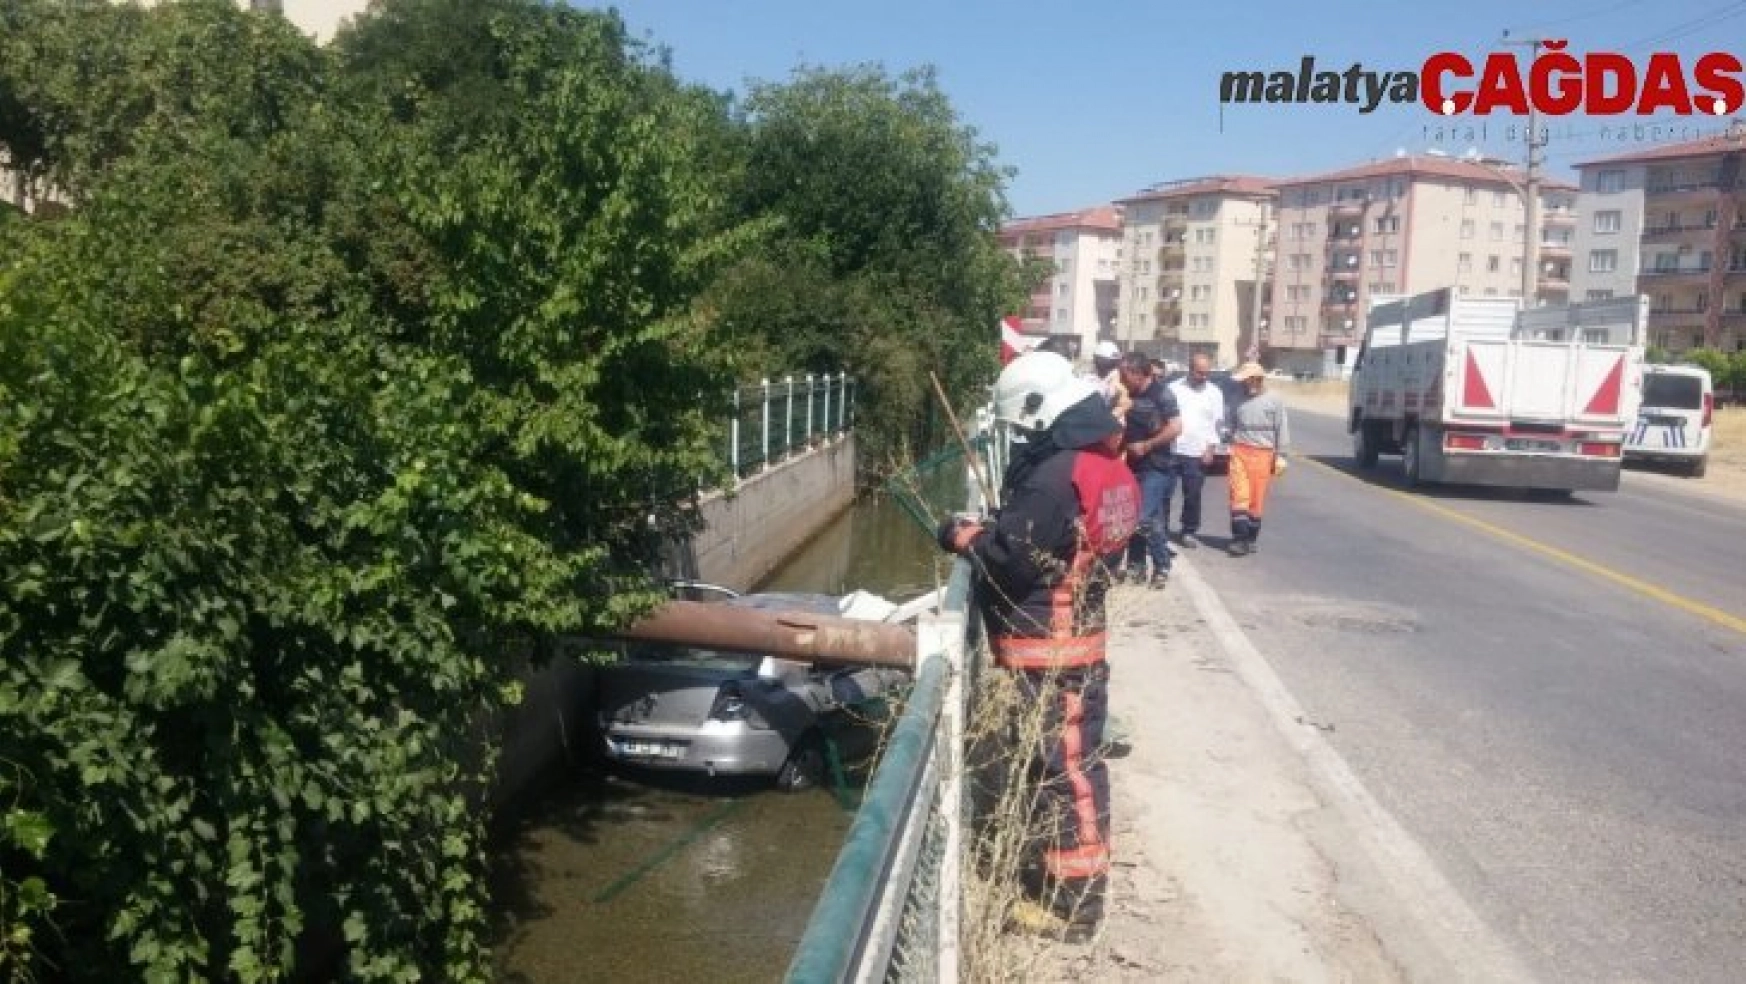 Otomobil sulama kanalına uçtu: 1 yaralı